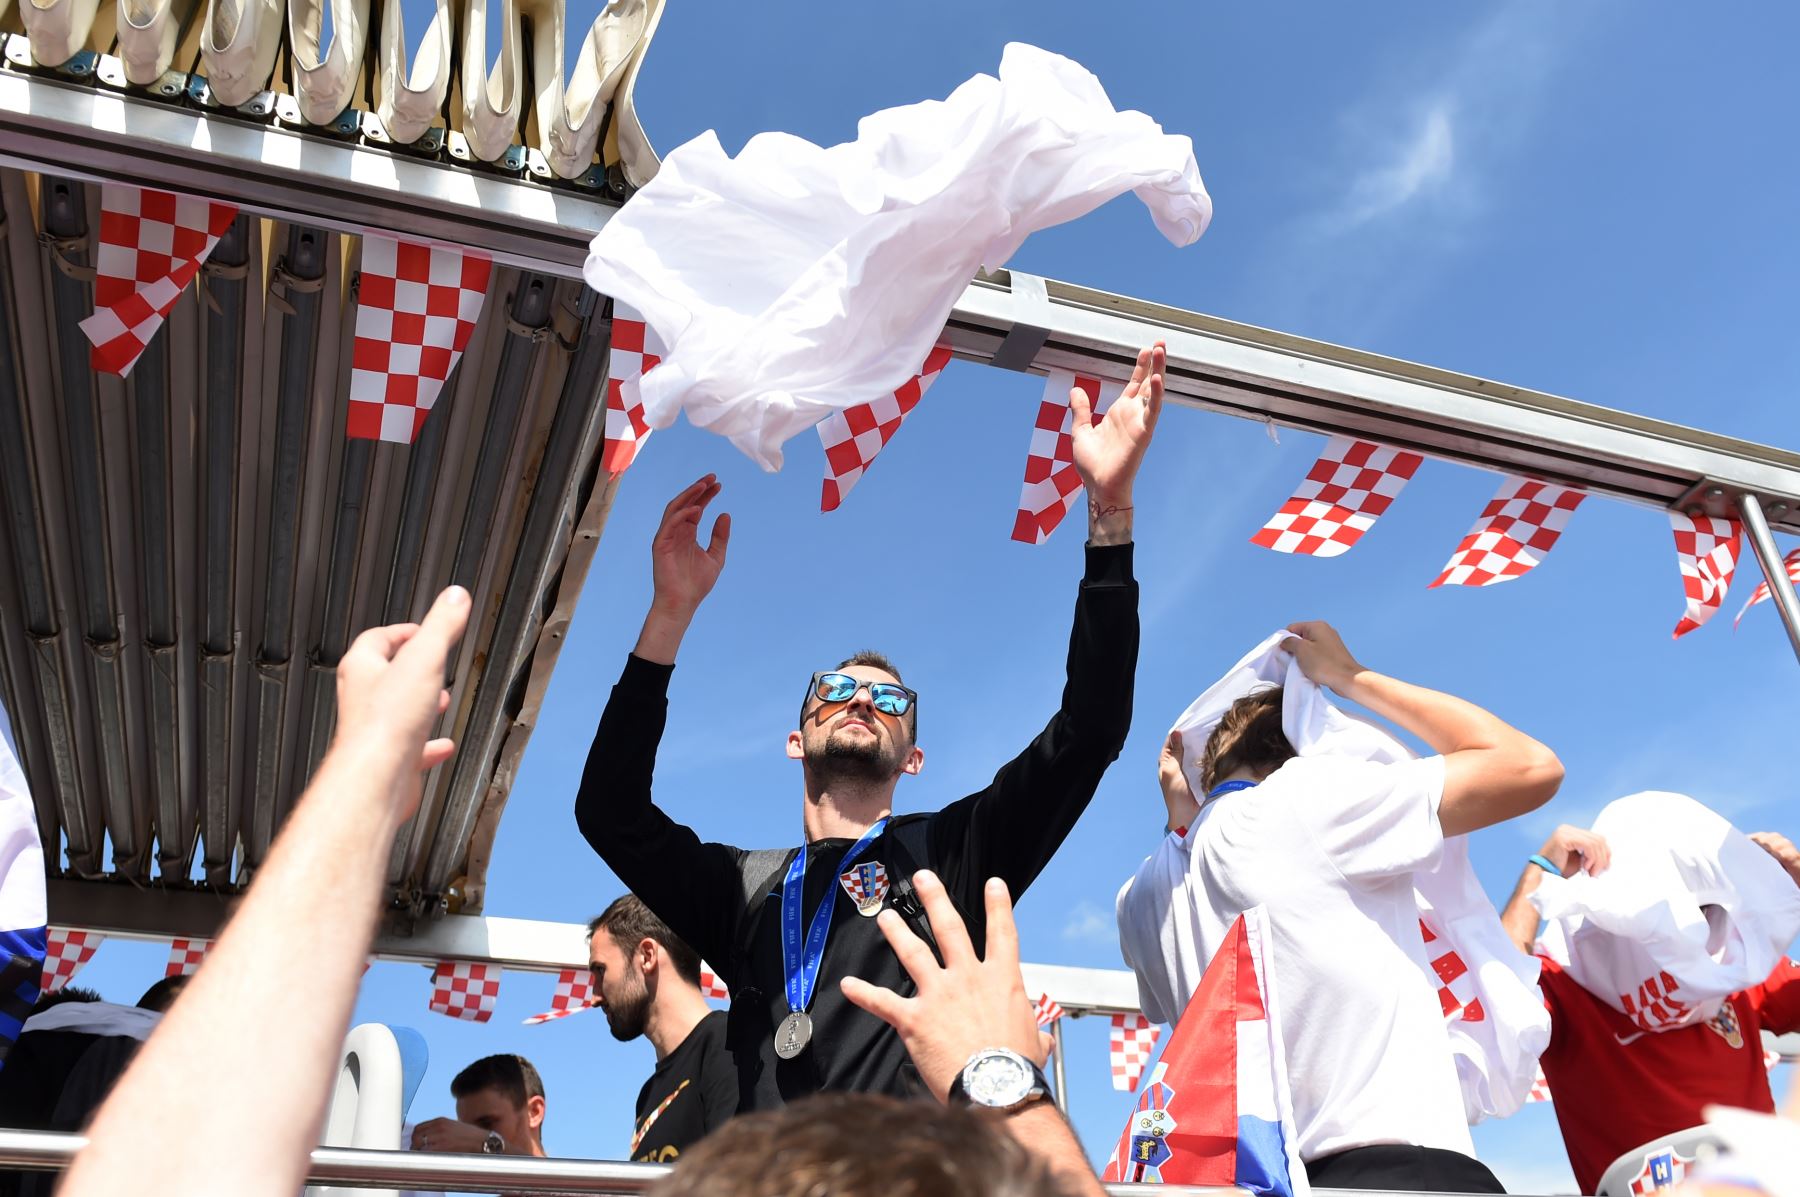 Los jugadores del equipo nacional de fútbol croata entregan sus camisetas a los fanáticos en el Aeropuerto Internacional de Zagreb desde su autocar de techo abierto durante una ceremonia de bienvenida. AFP